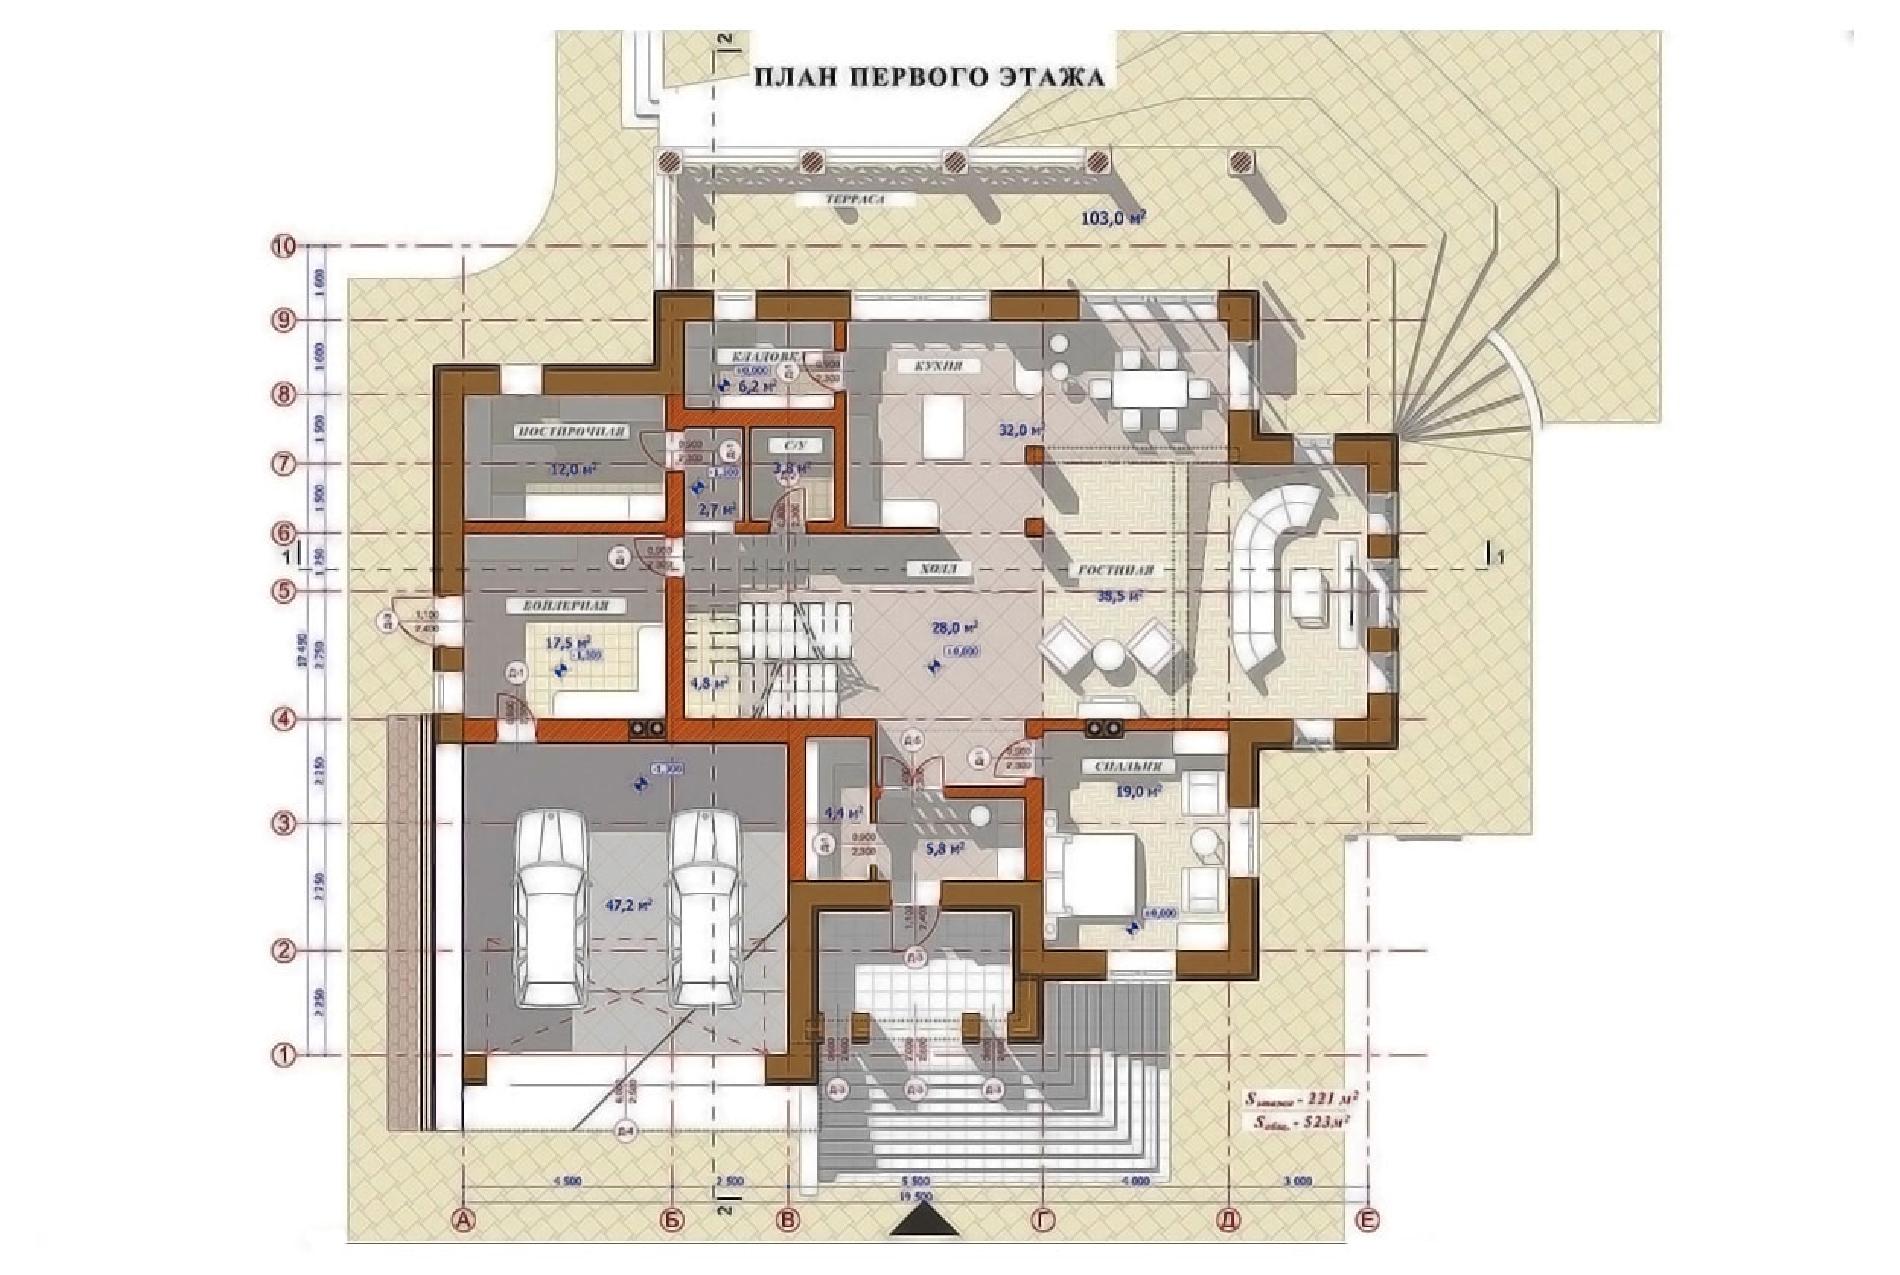 Планировка проекта дома №av-570 av-570_p1-min.jpg